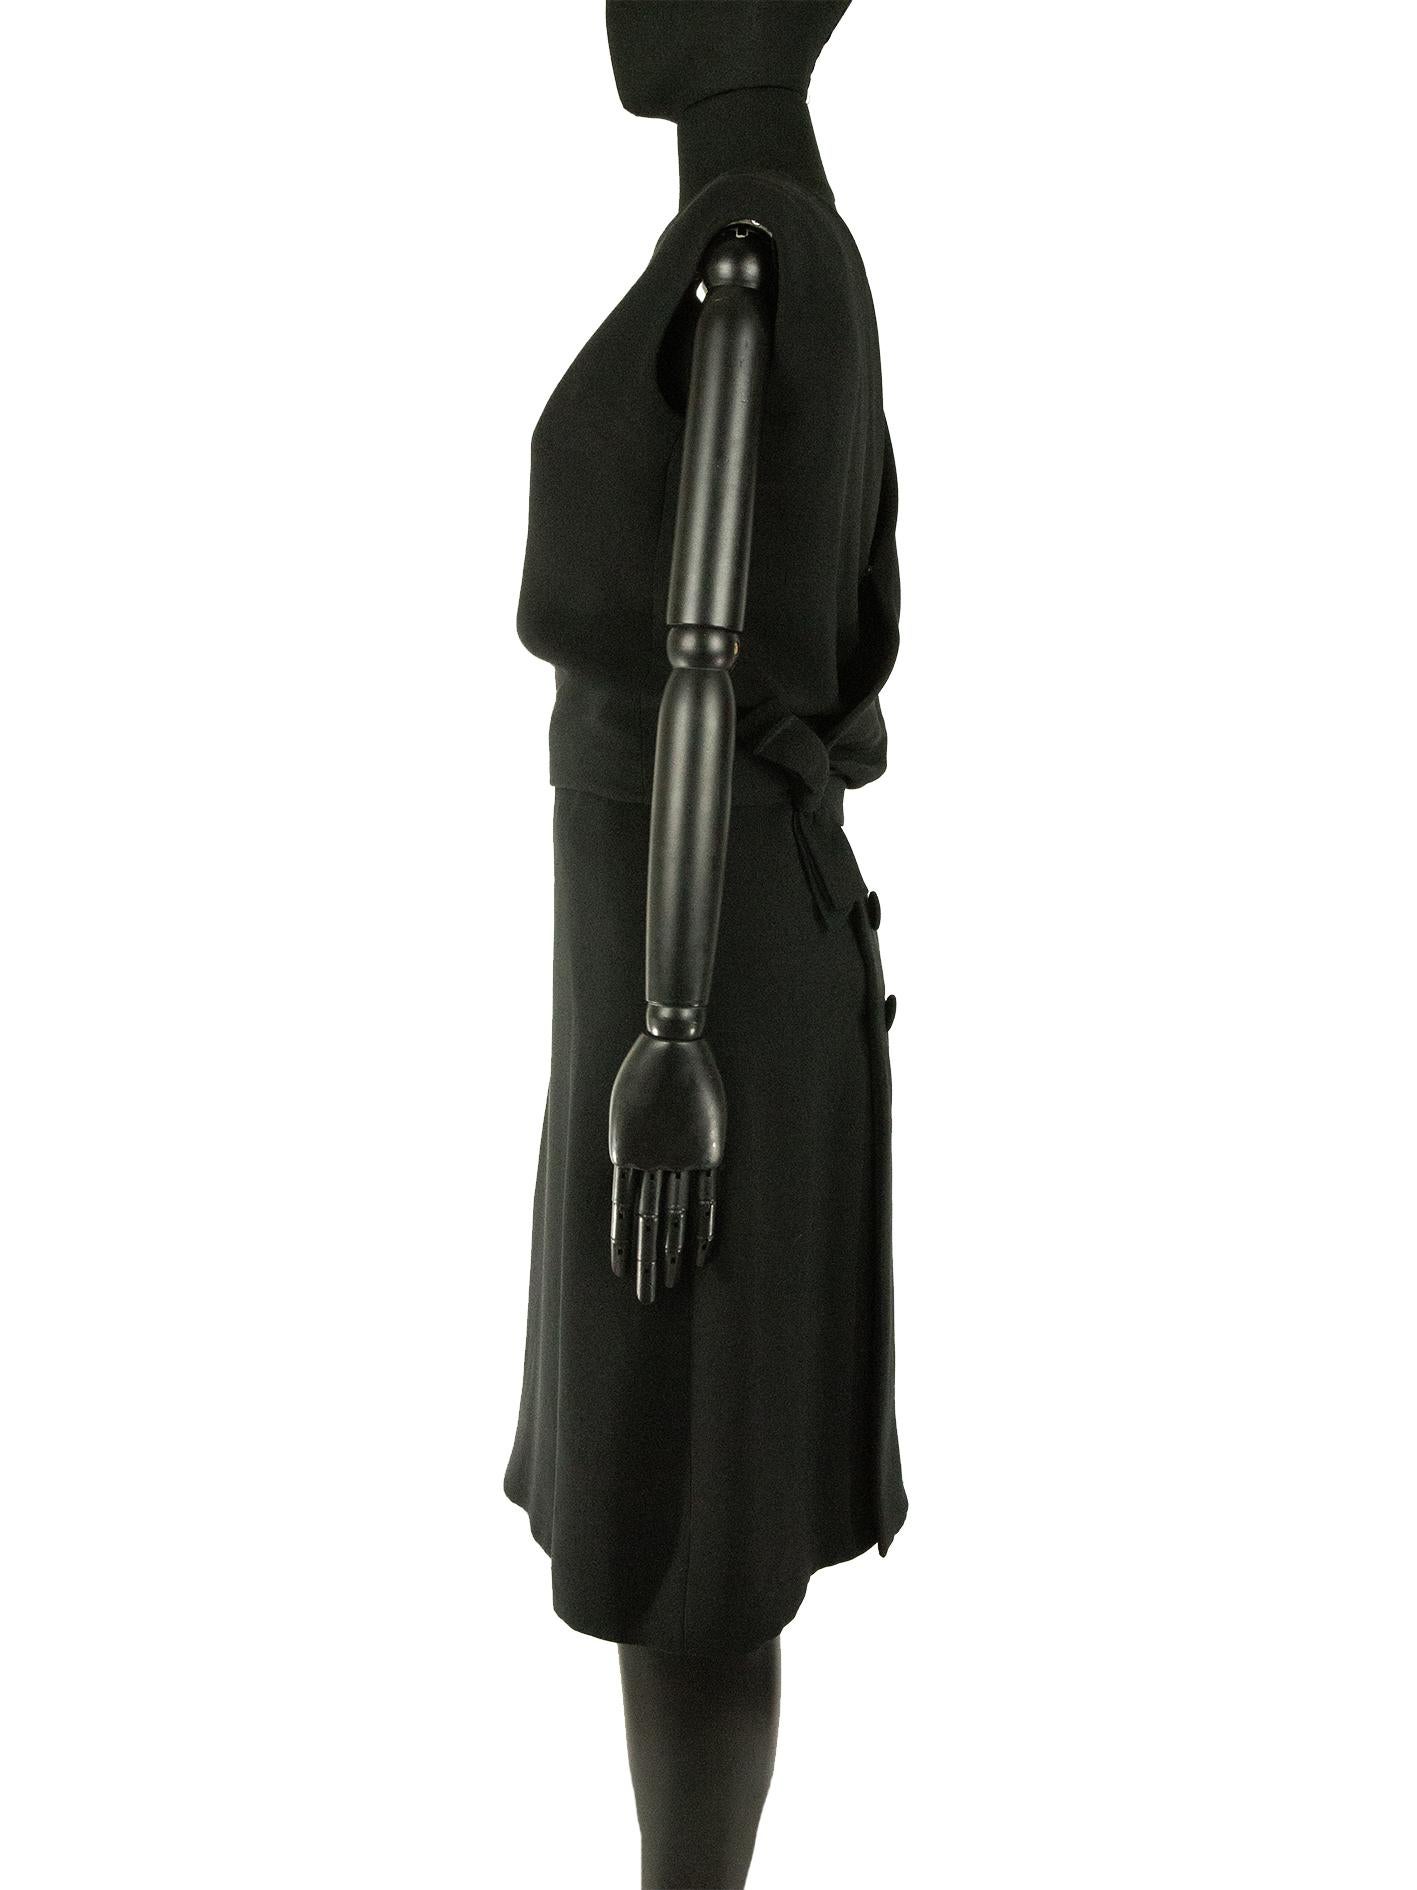 Une robe noire de la collection printemps 1961 Couture Christian Dior conçue par Marc Bohan. Cette robe est dotée d'une encolure haute sur le devant et d'un dos ouvert croisé. Le corsage de la robe est séparé de la jupe à l'avant, il s'enroule